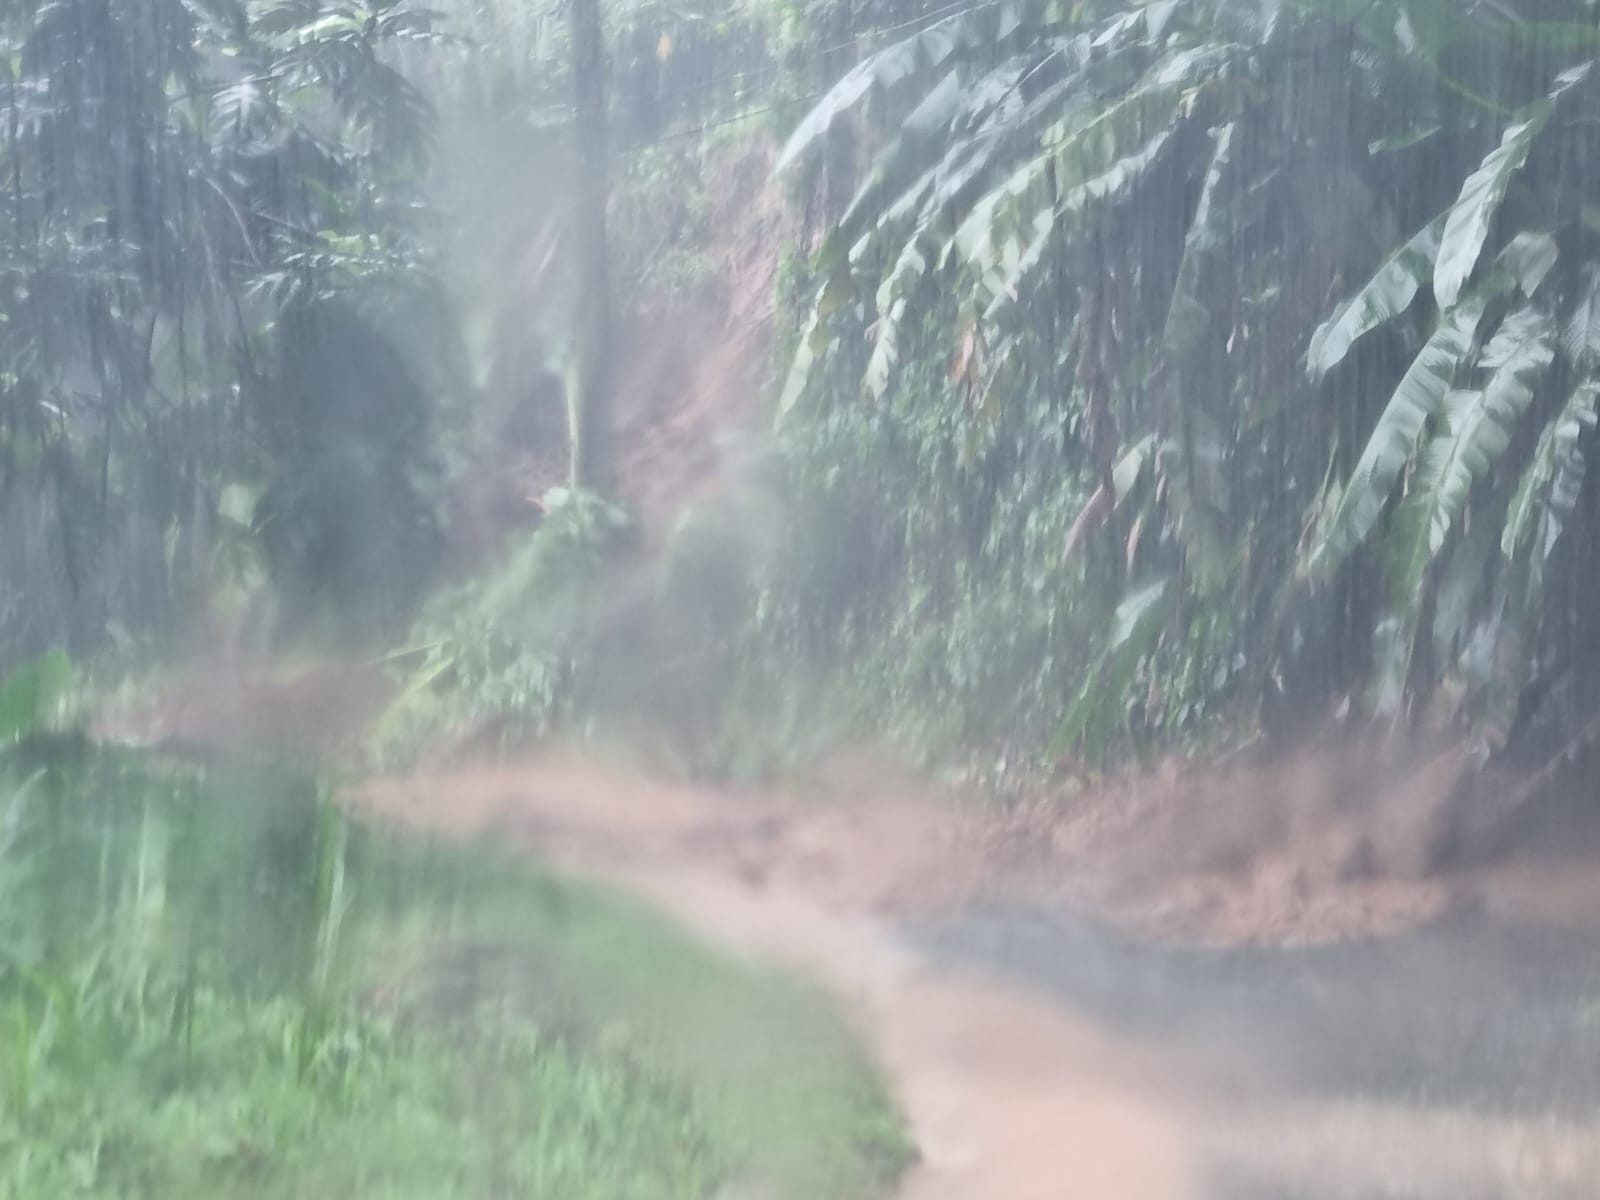     [Vidéo] Des routes coupées par les fortes pluies à Sainte-Marie

